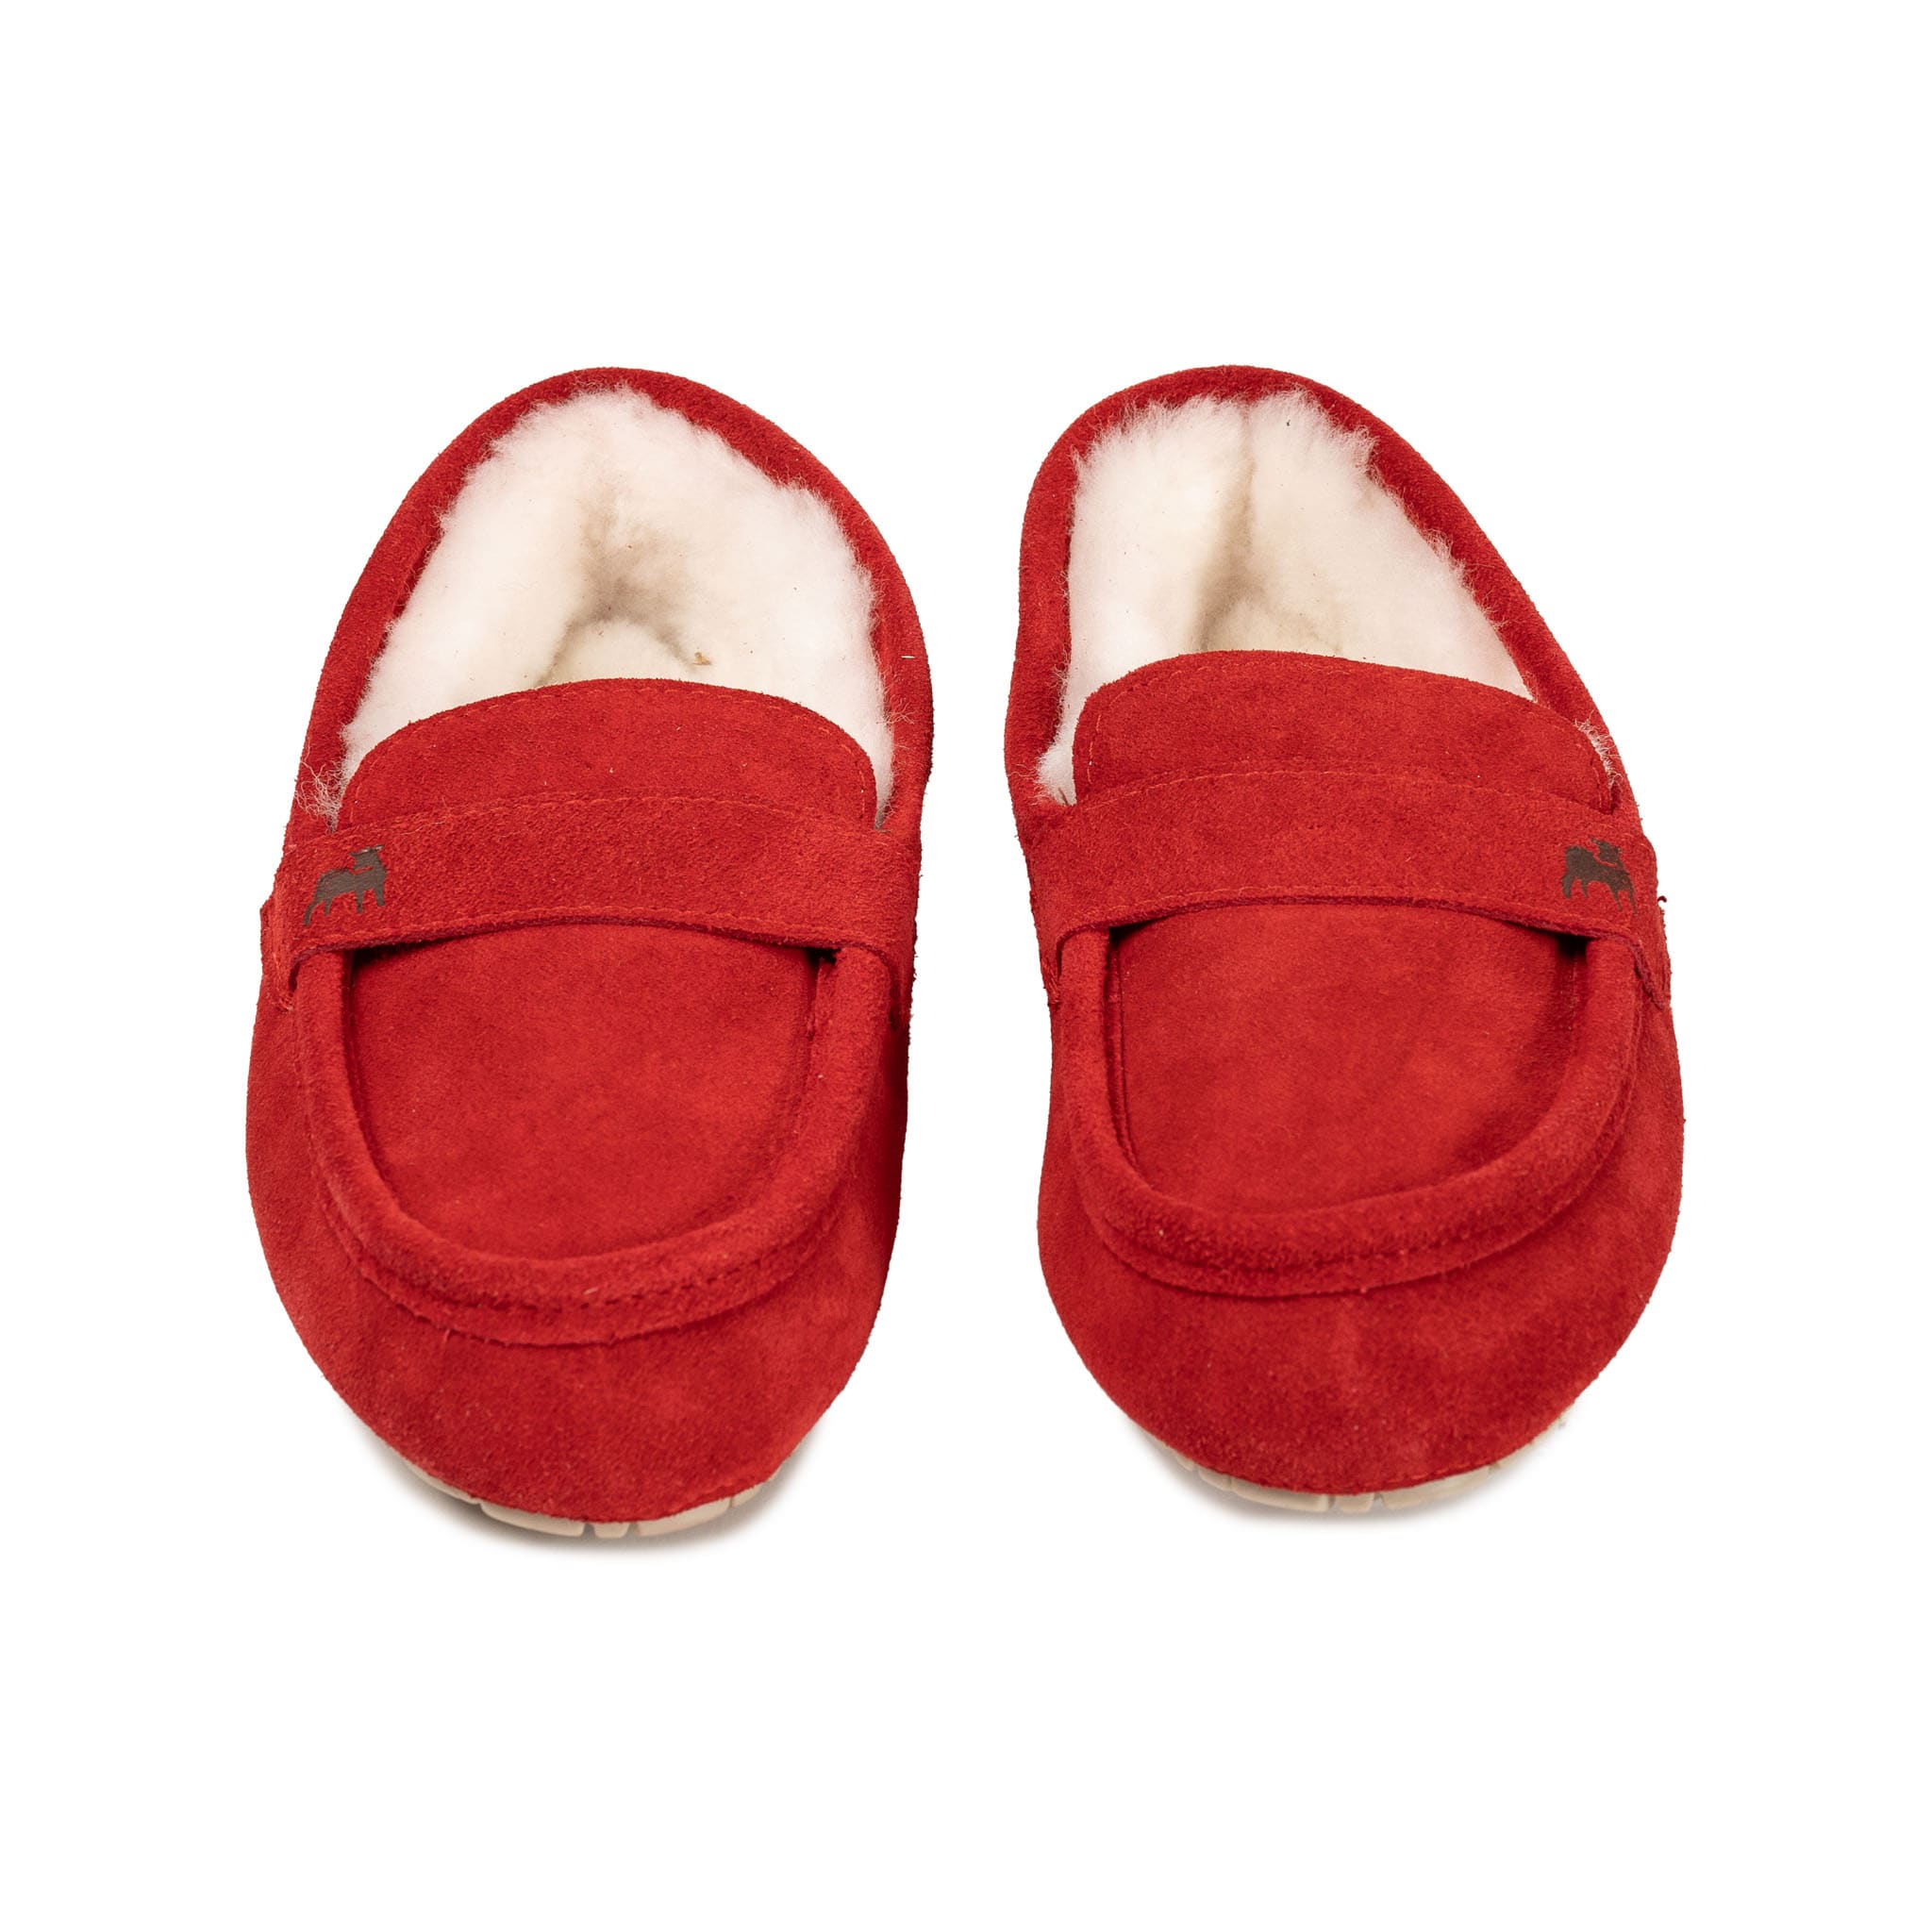 Denver slippers